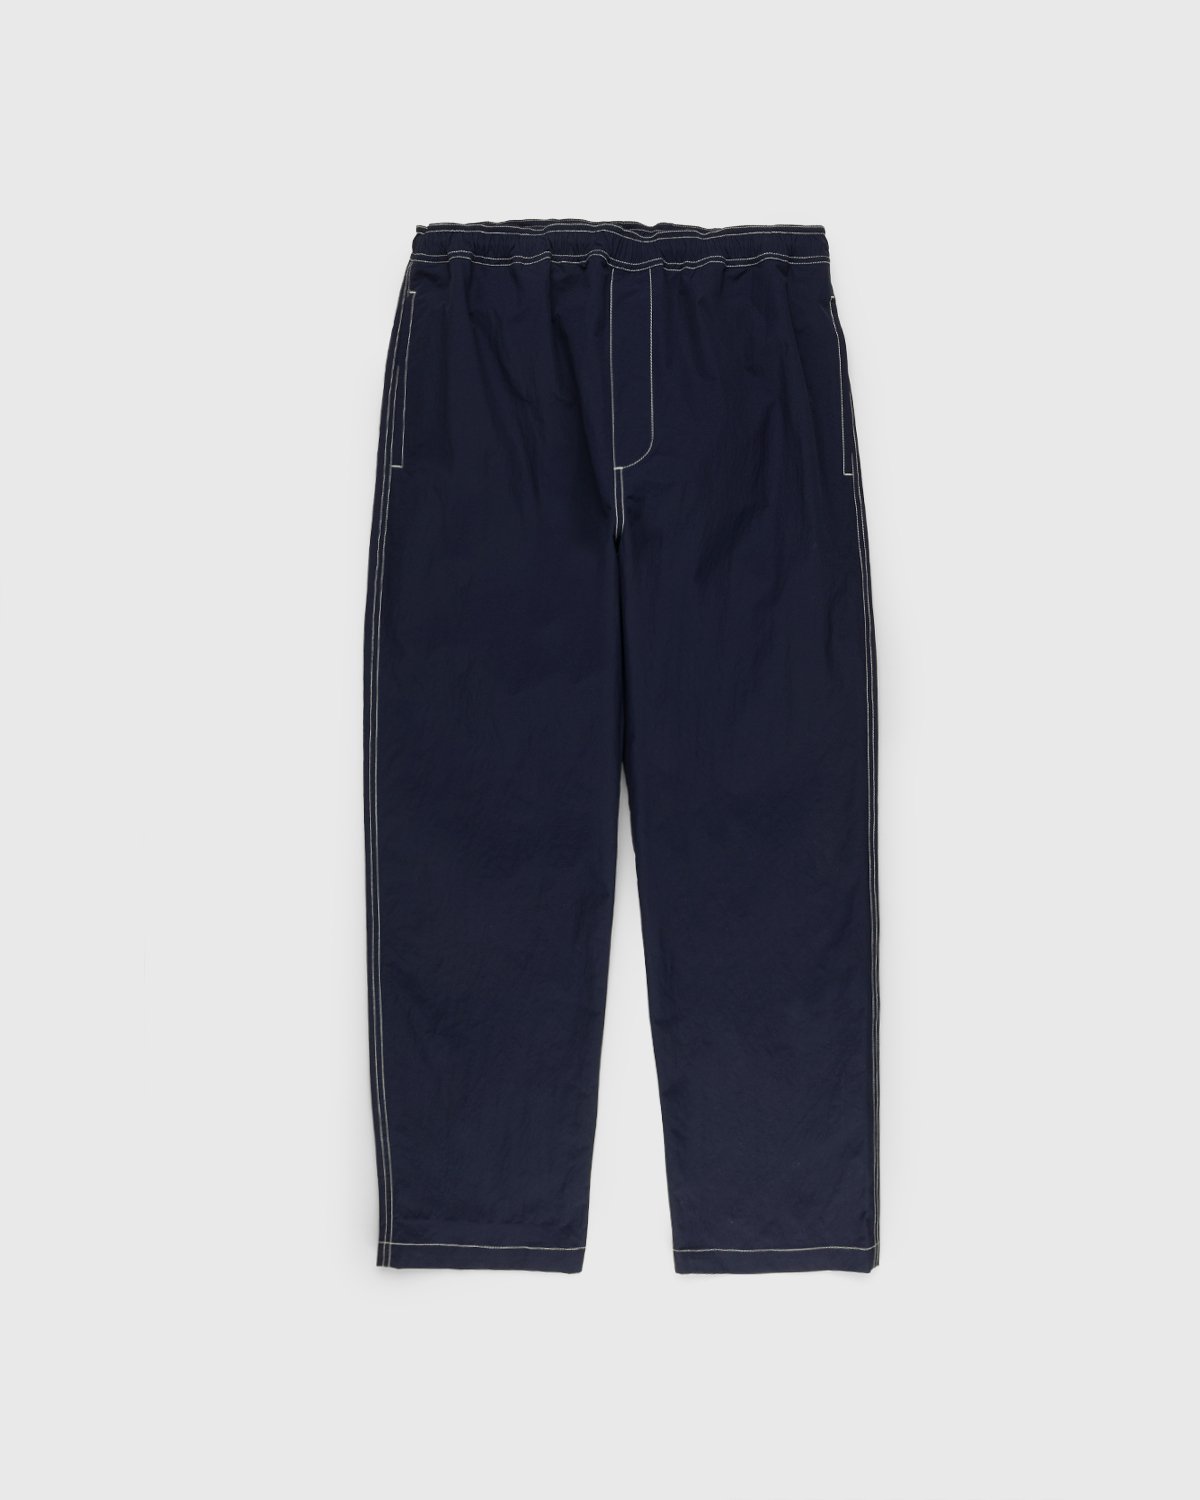 Highsnobiety - Contrast Brushed Nylon Elastic Pants Navy - Clothing - Blue - Image 1